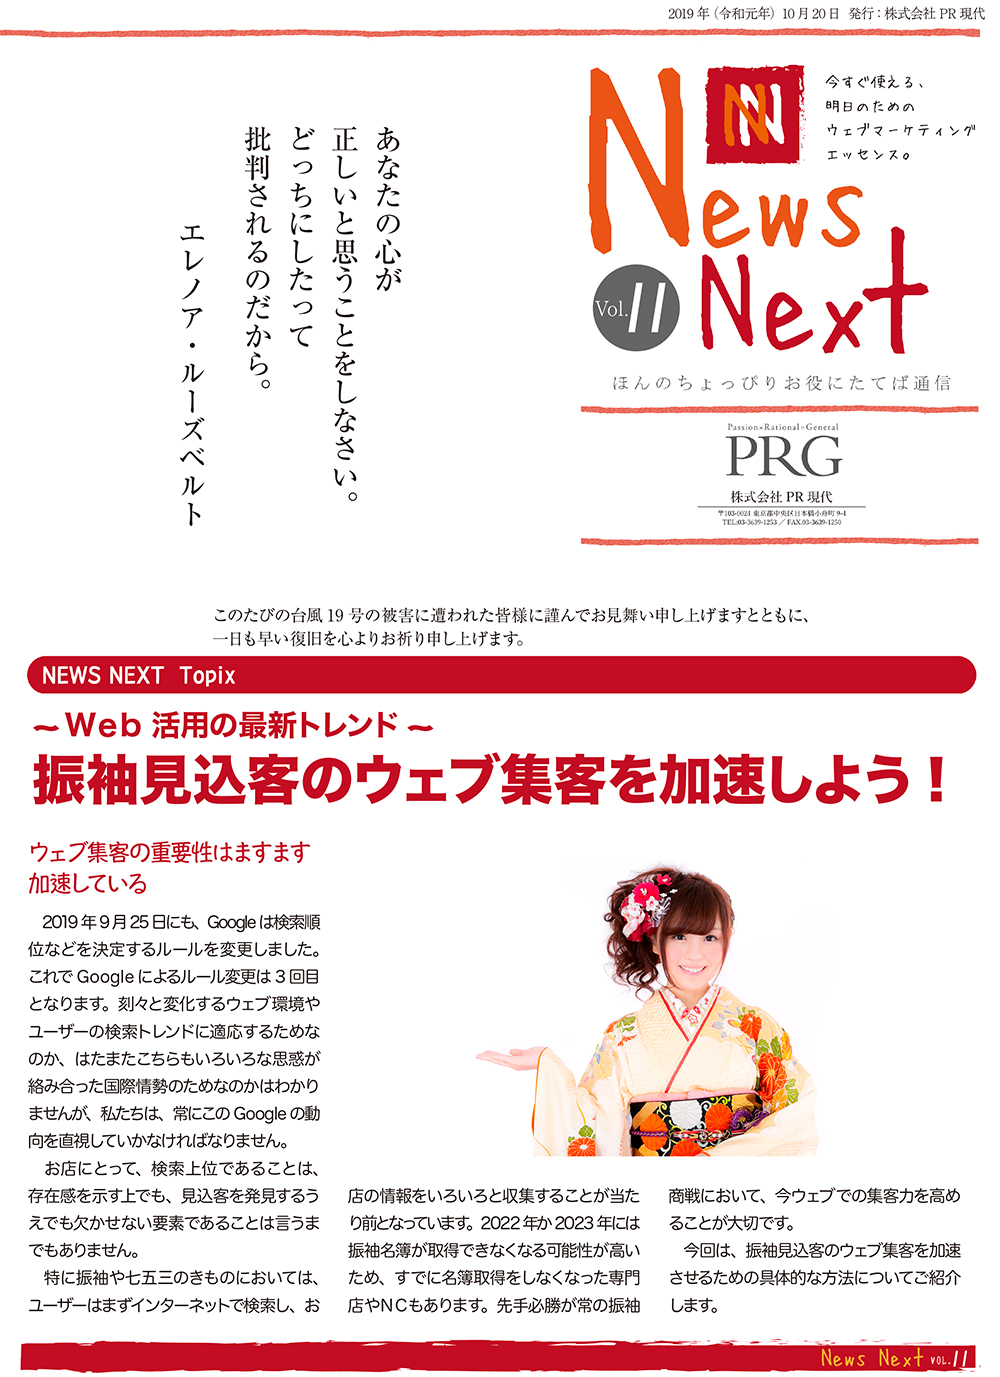 News NEXT vol.11